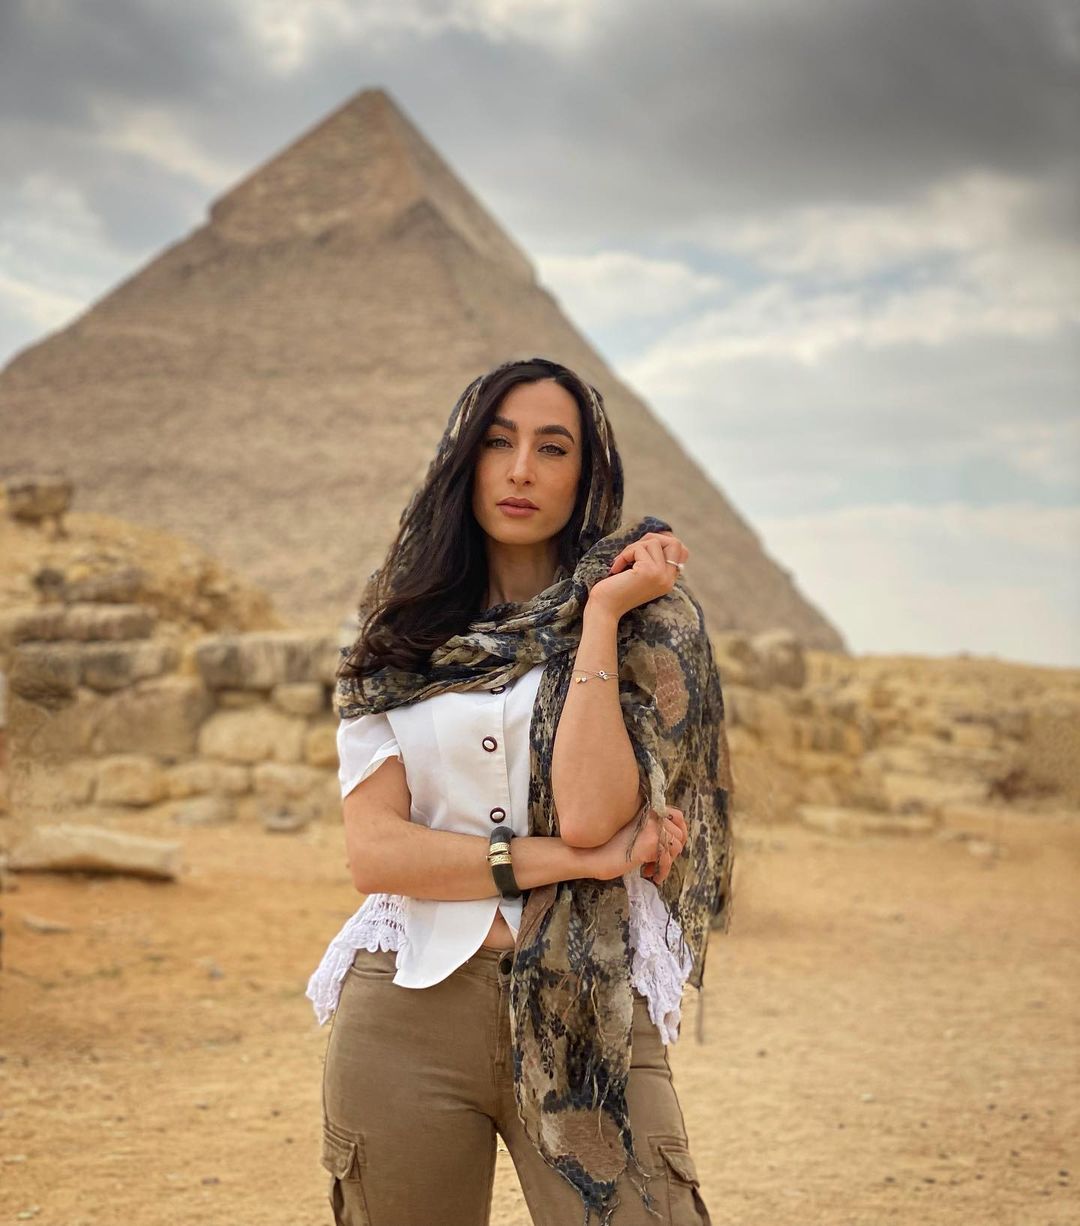 Kate Valério vor den Pyramiden in Ägypten